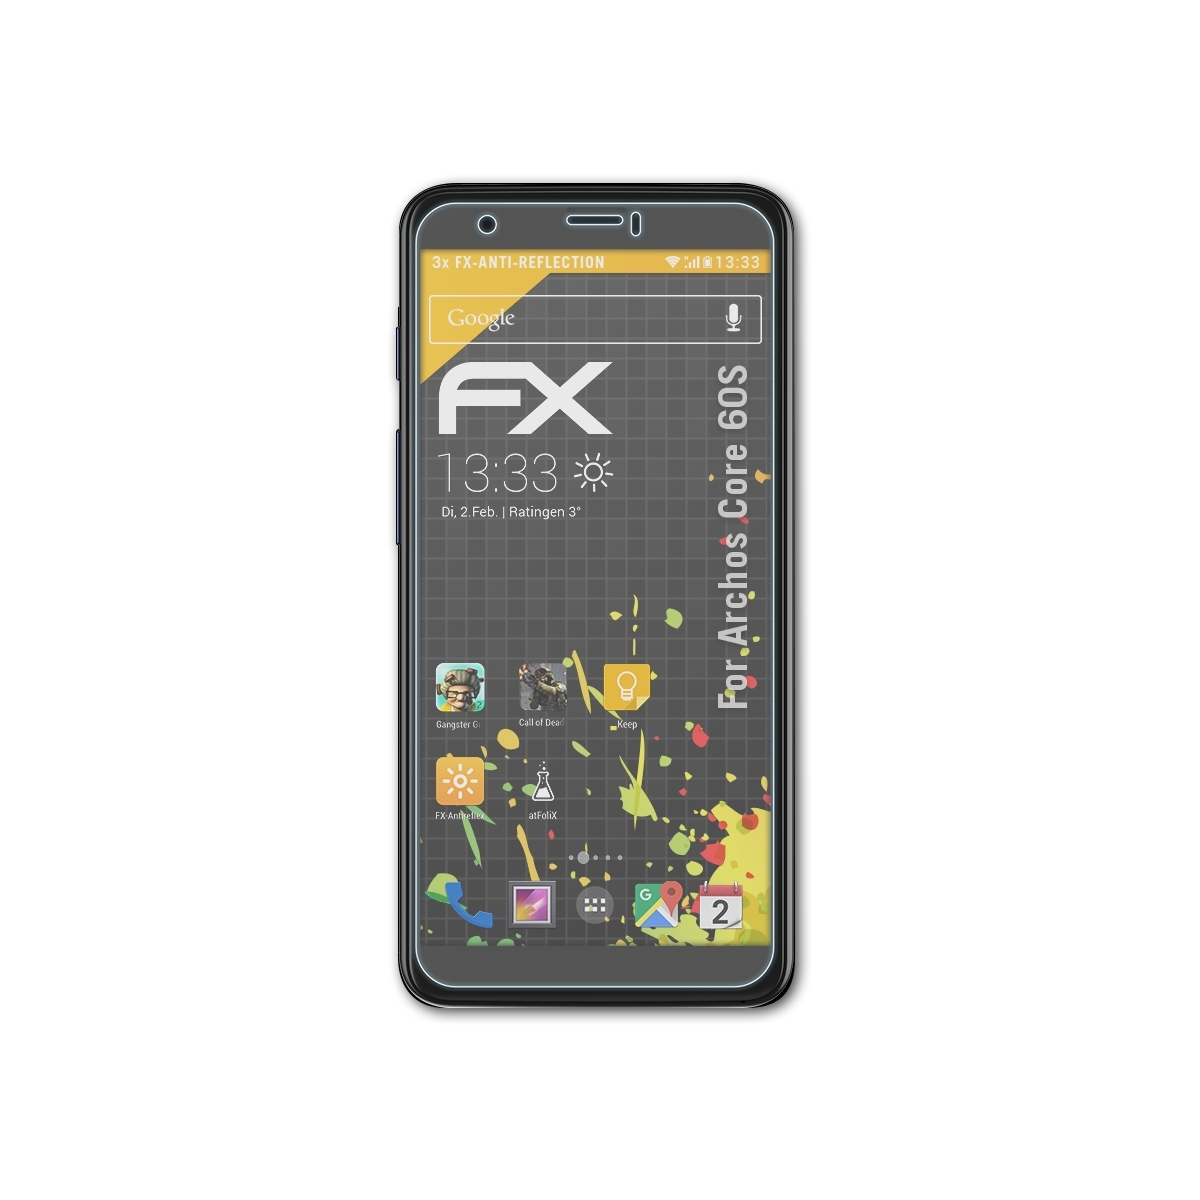 FX-Antireflex ATFOLIX 3x Archos 60S) Displayschutz(für Core